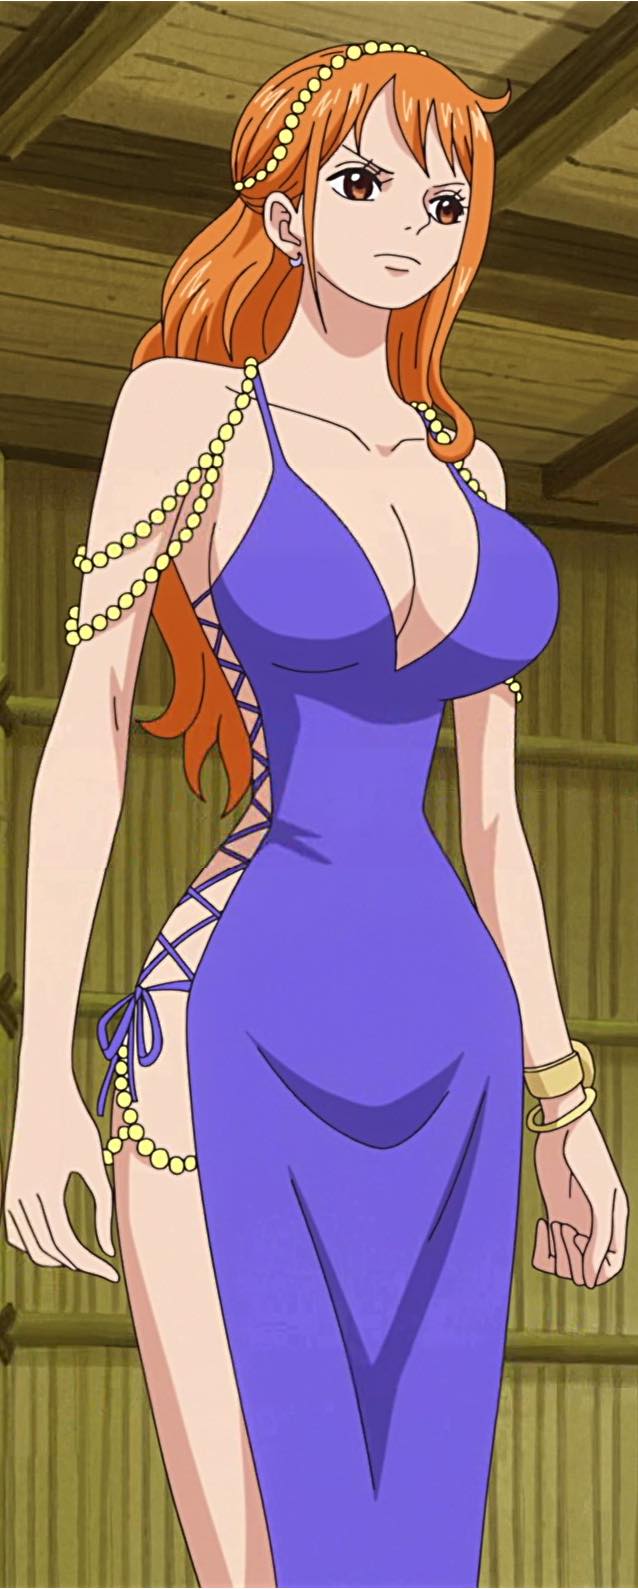 Hình ảnh Nami trong One Piece2